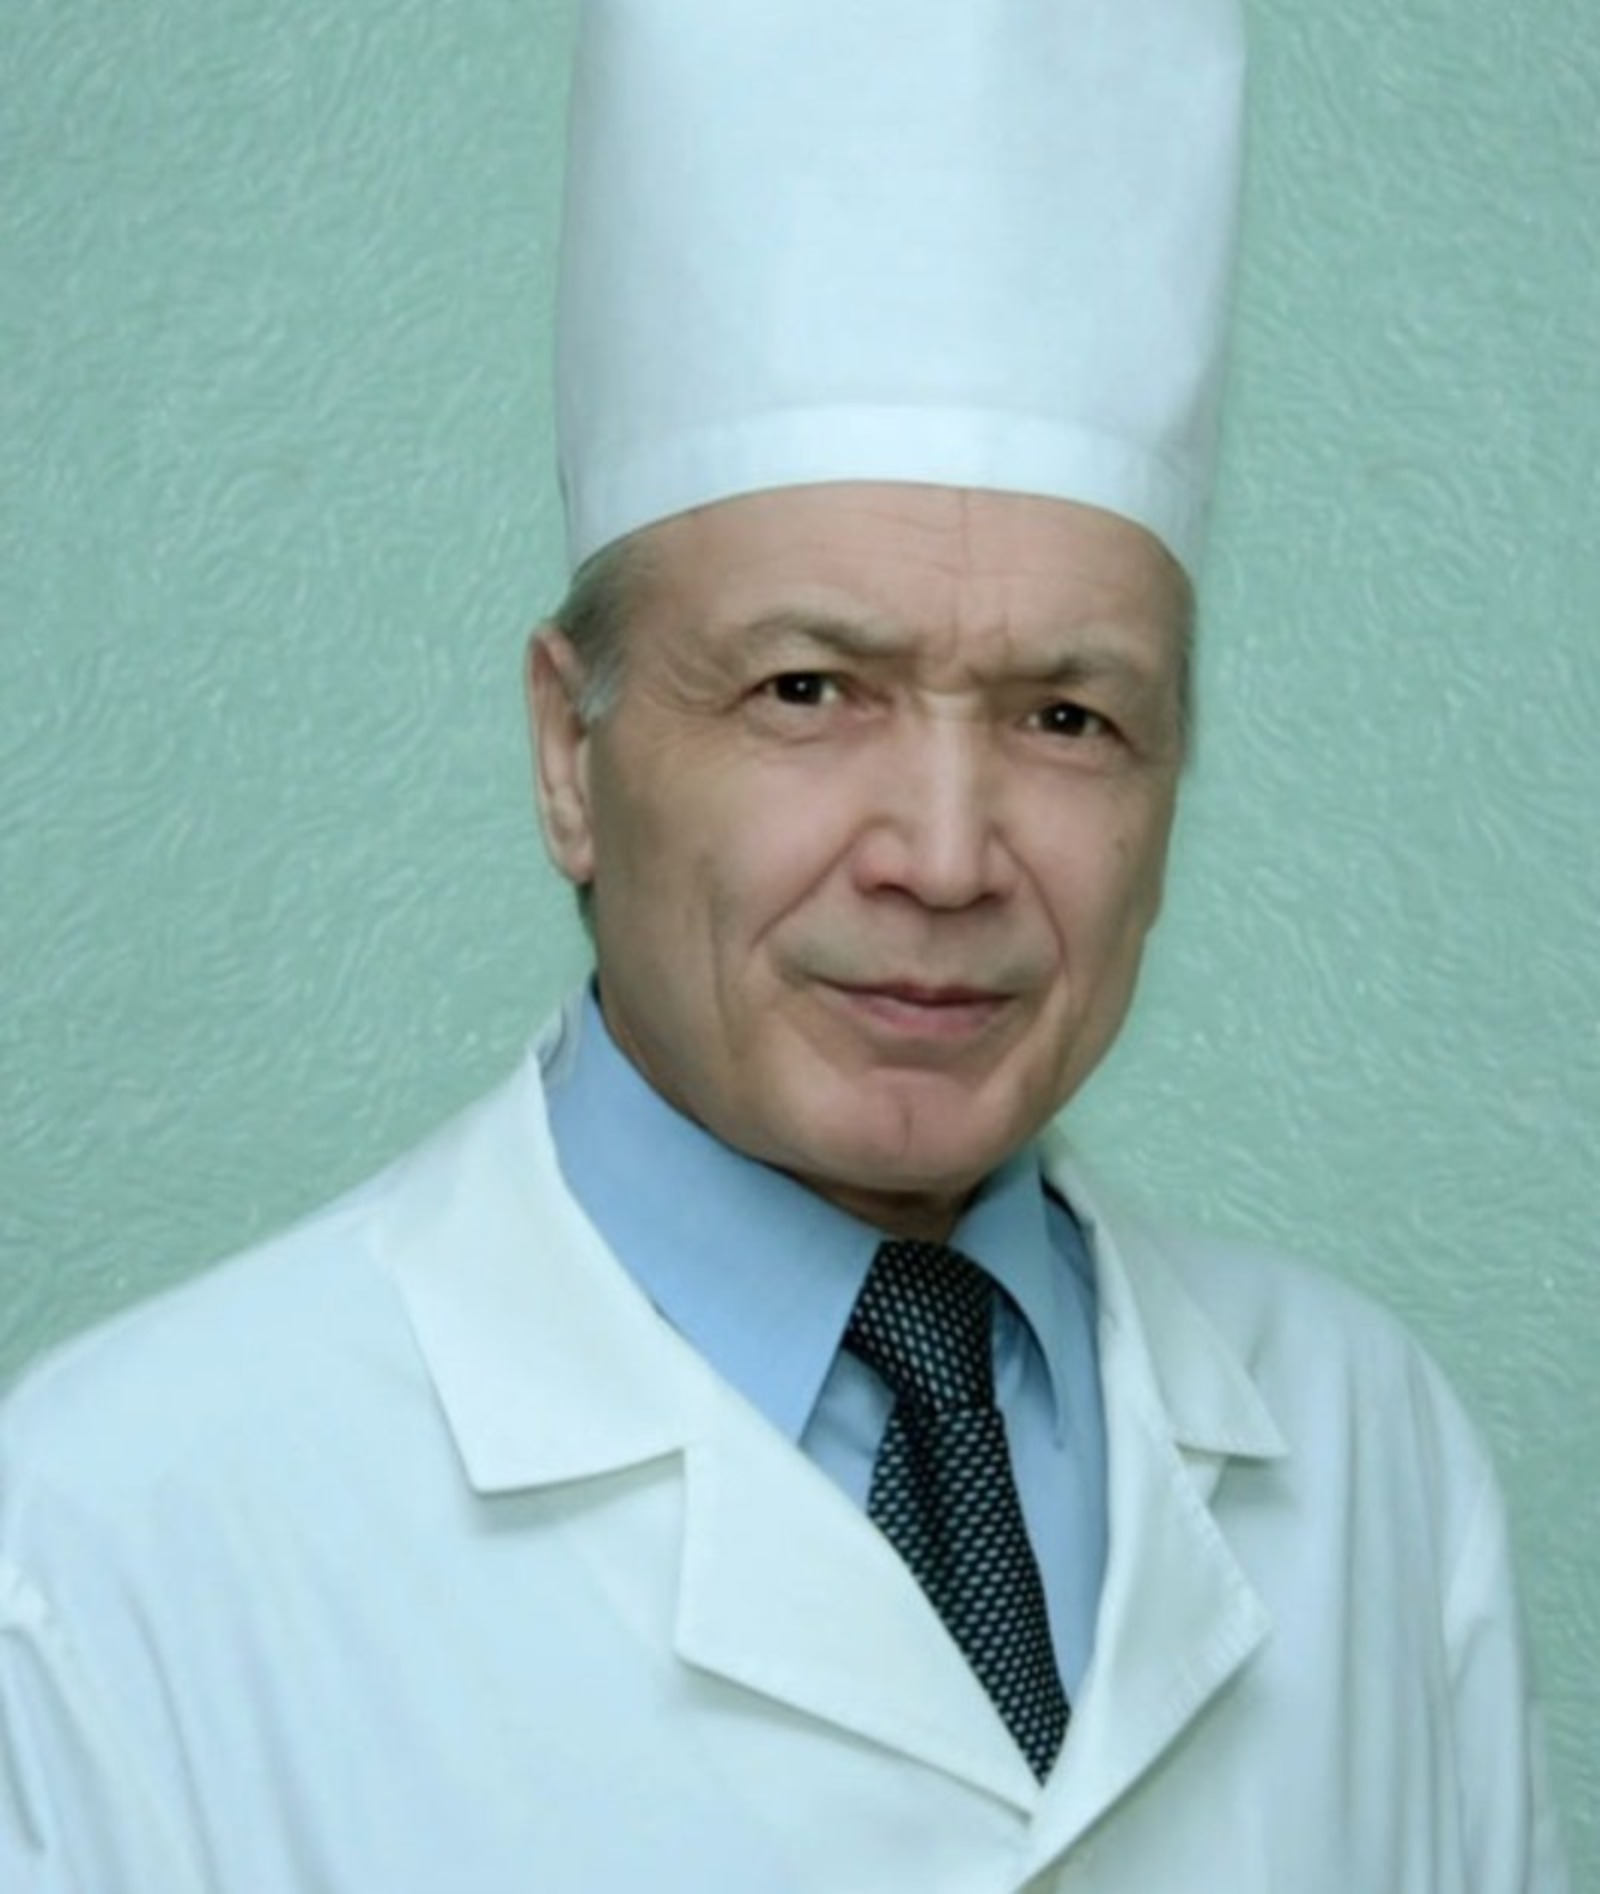 Радий Хабиров поздравил своего главного медицинского советника с юбилеем